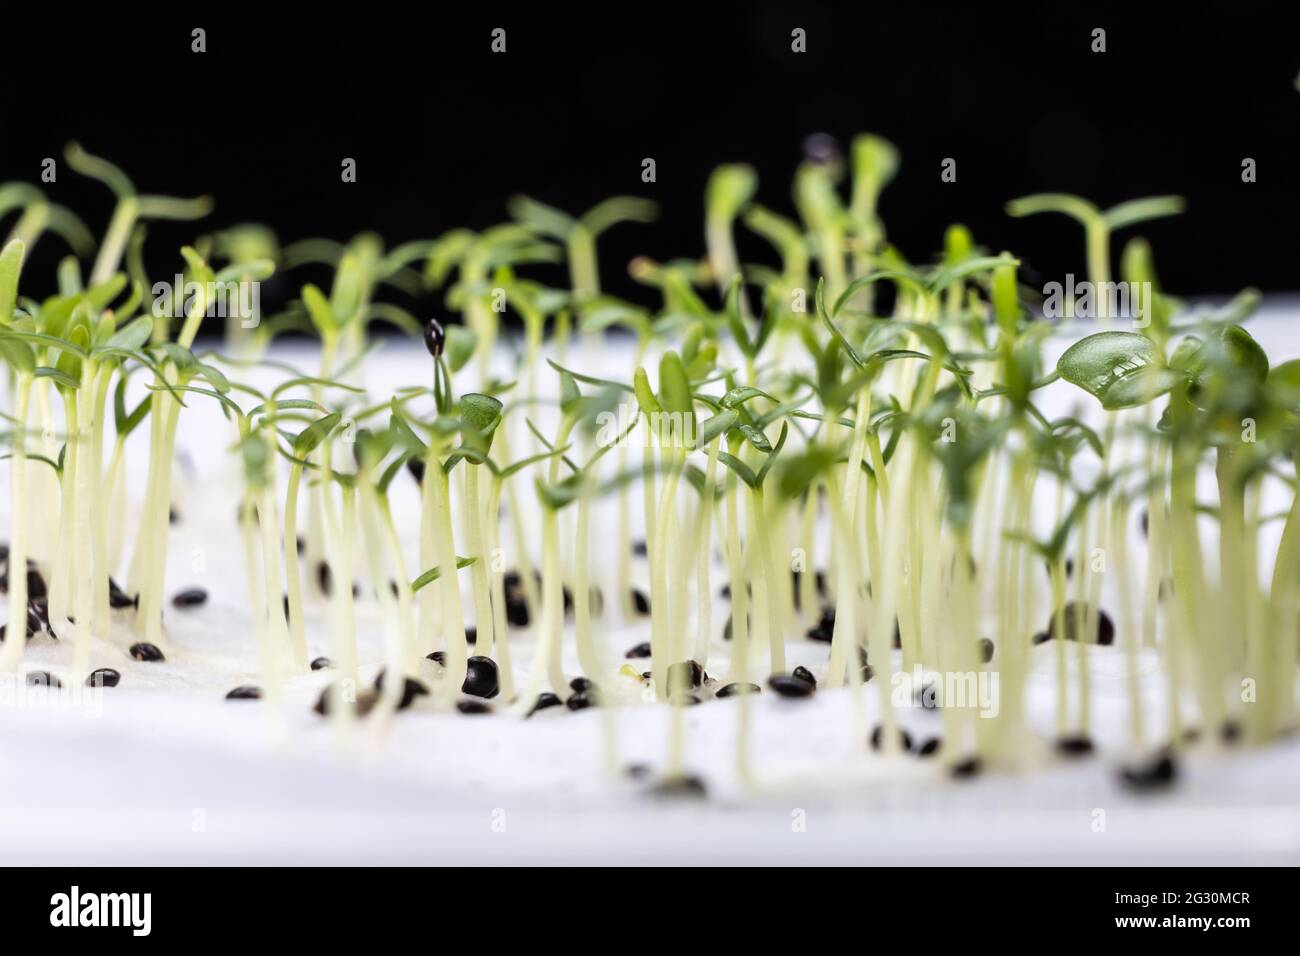 Primer plano de las semillas de espinacas chinas que han germinado en agua húmeda empapada en toallas de cocina Foto de stock